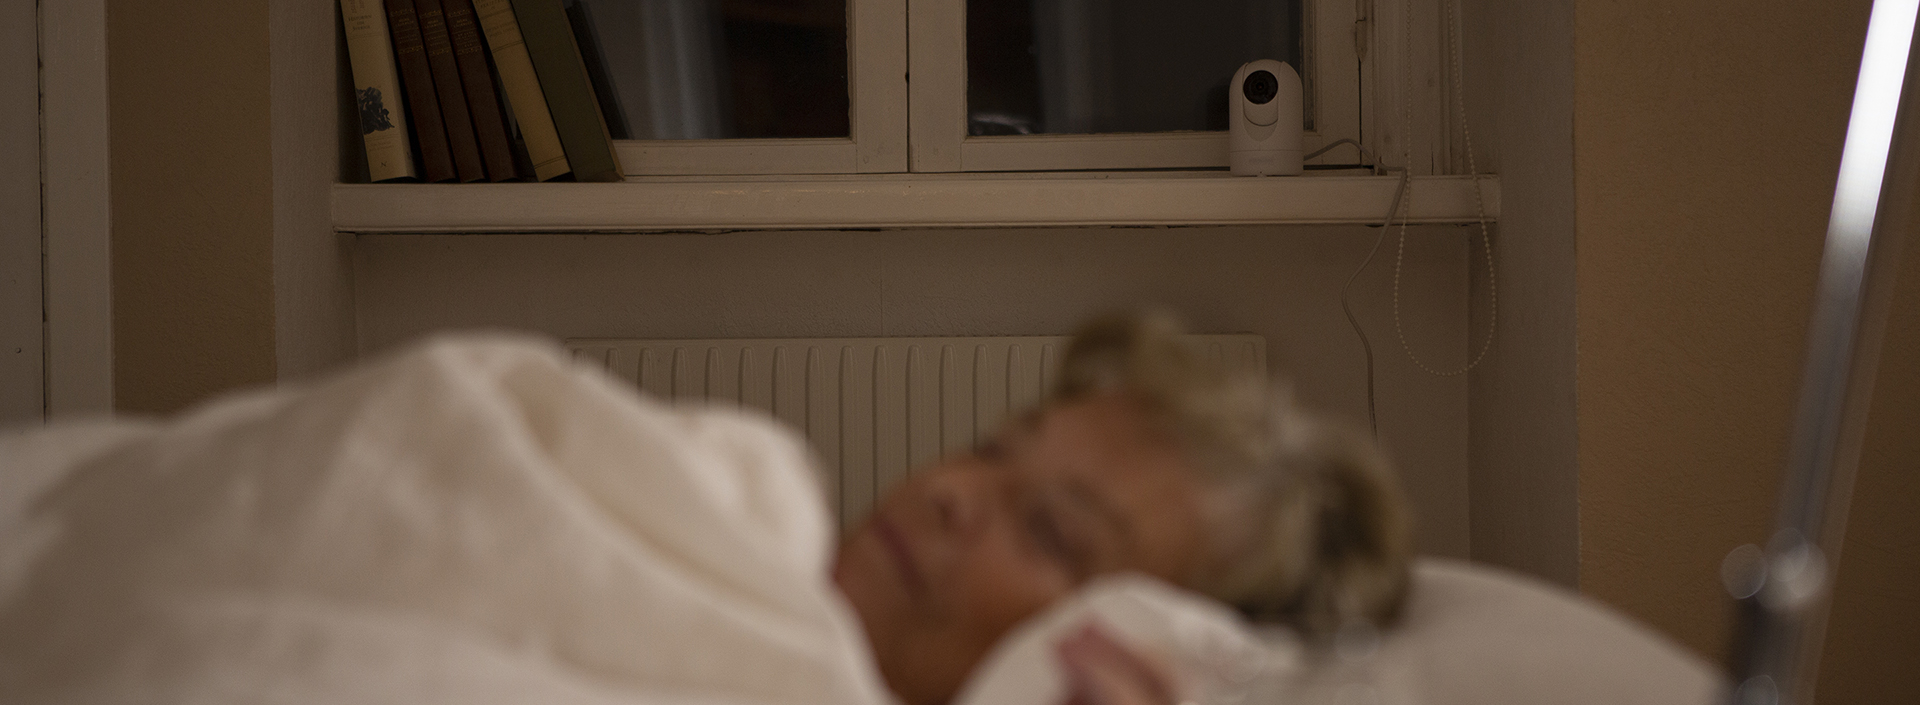 Digitalt tilsyn med Doro Visit av en kvinne som sover